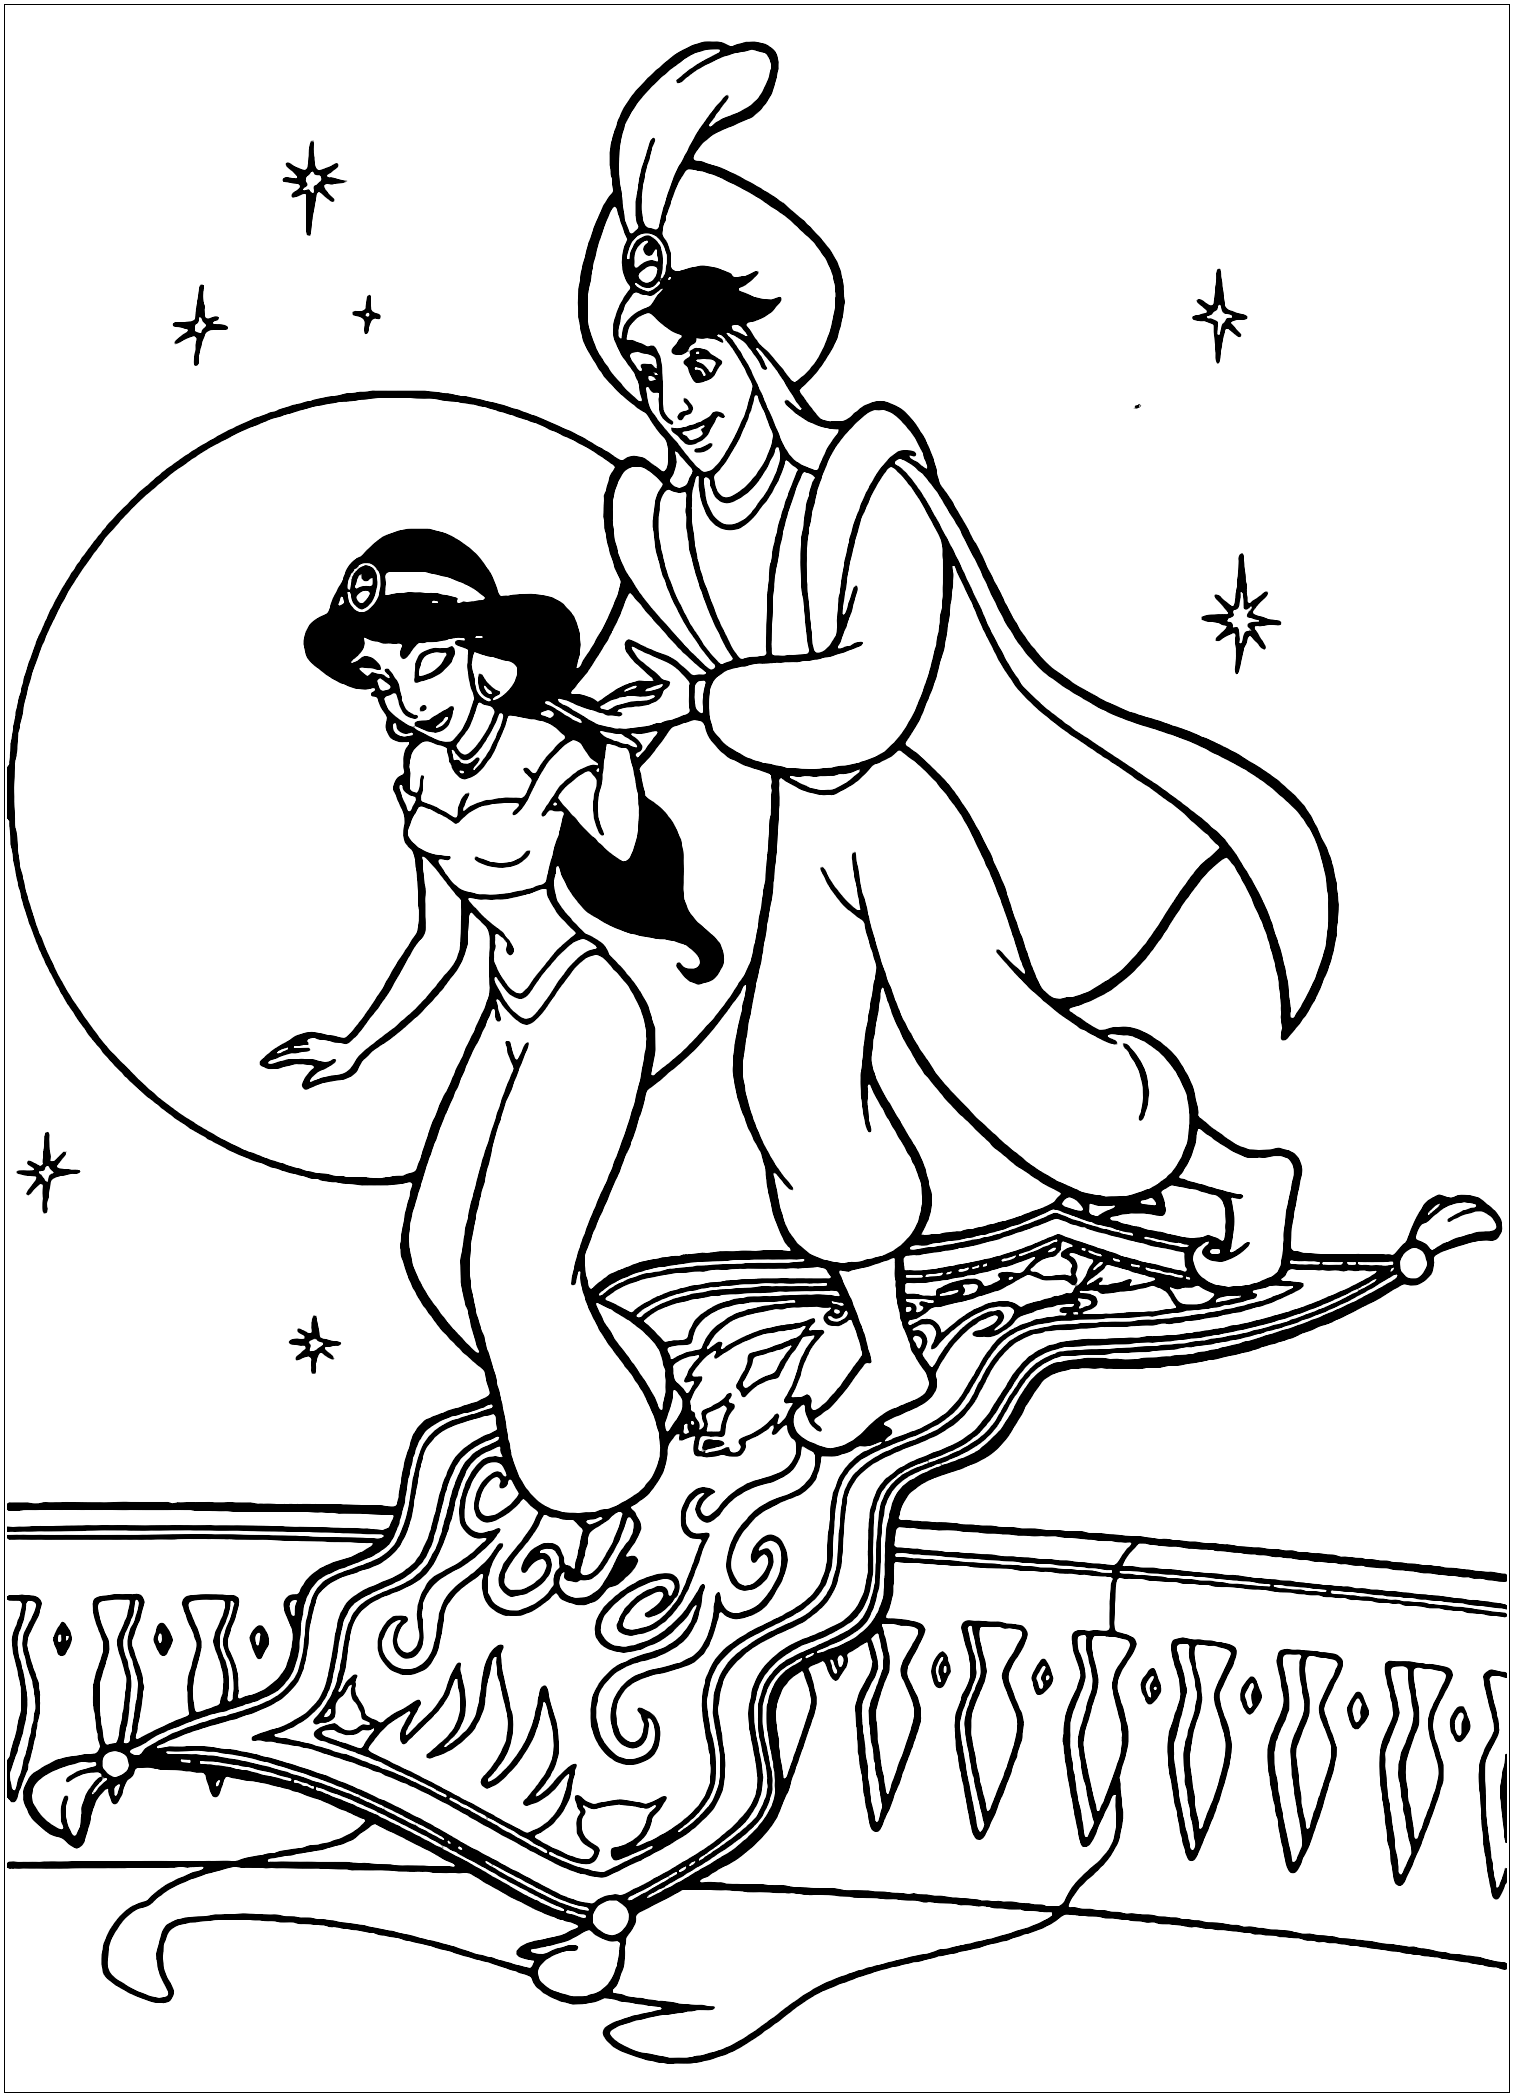 Aladdin and Jasmine, Disney characters - Aladdin (and Jasmine) Kids